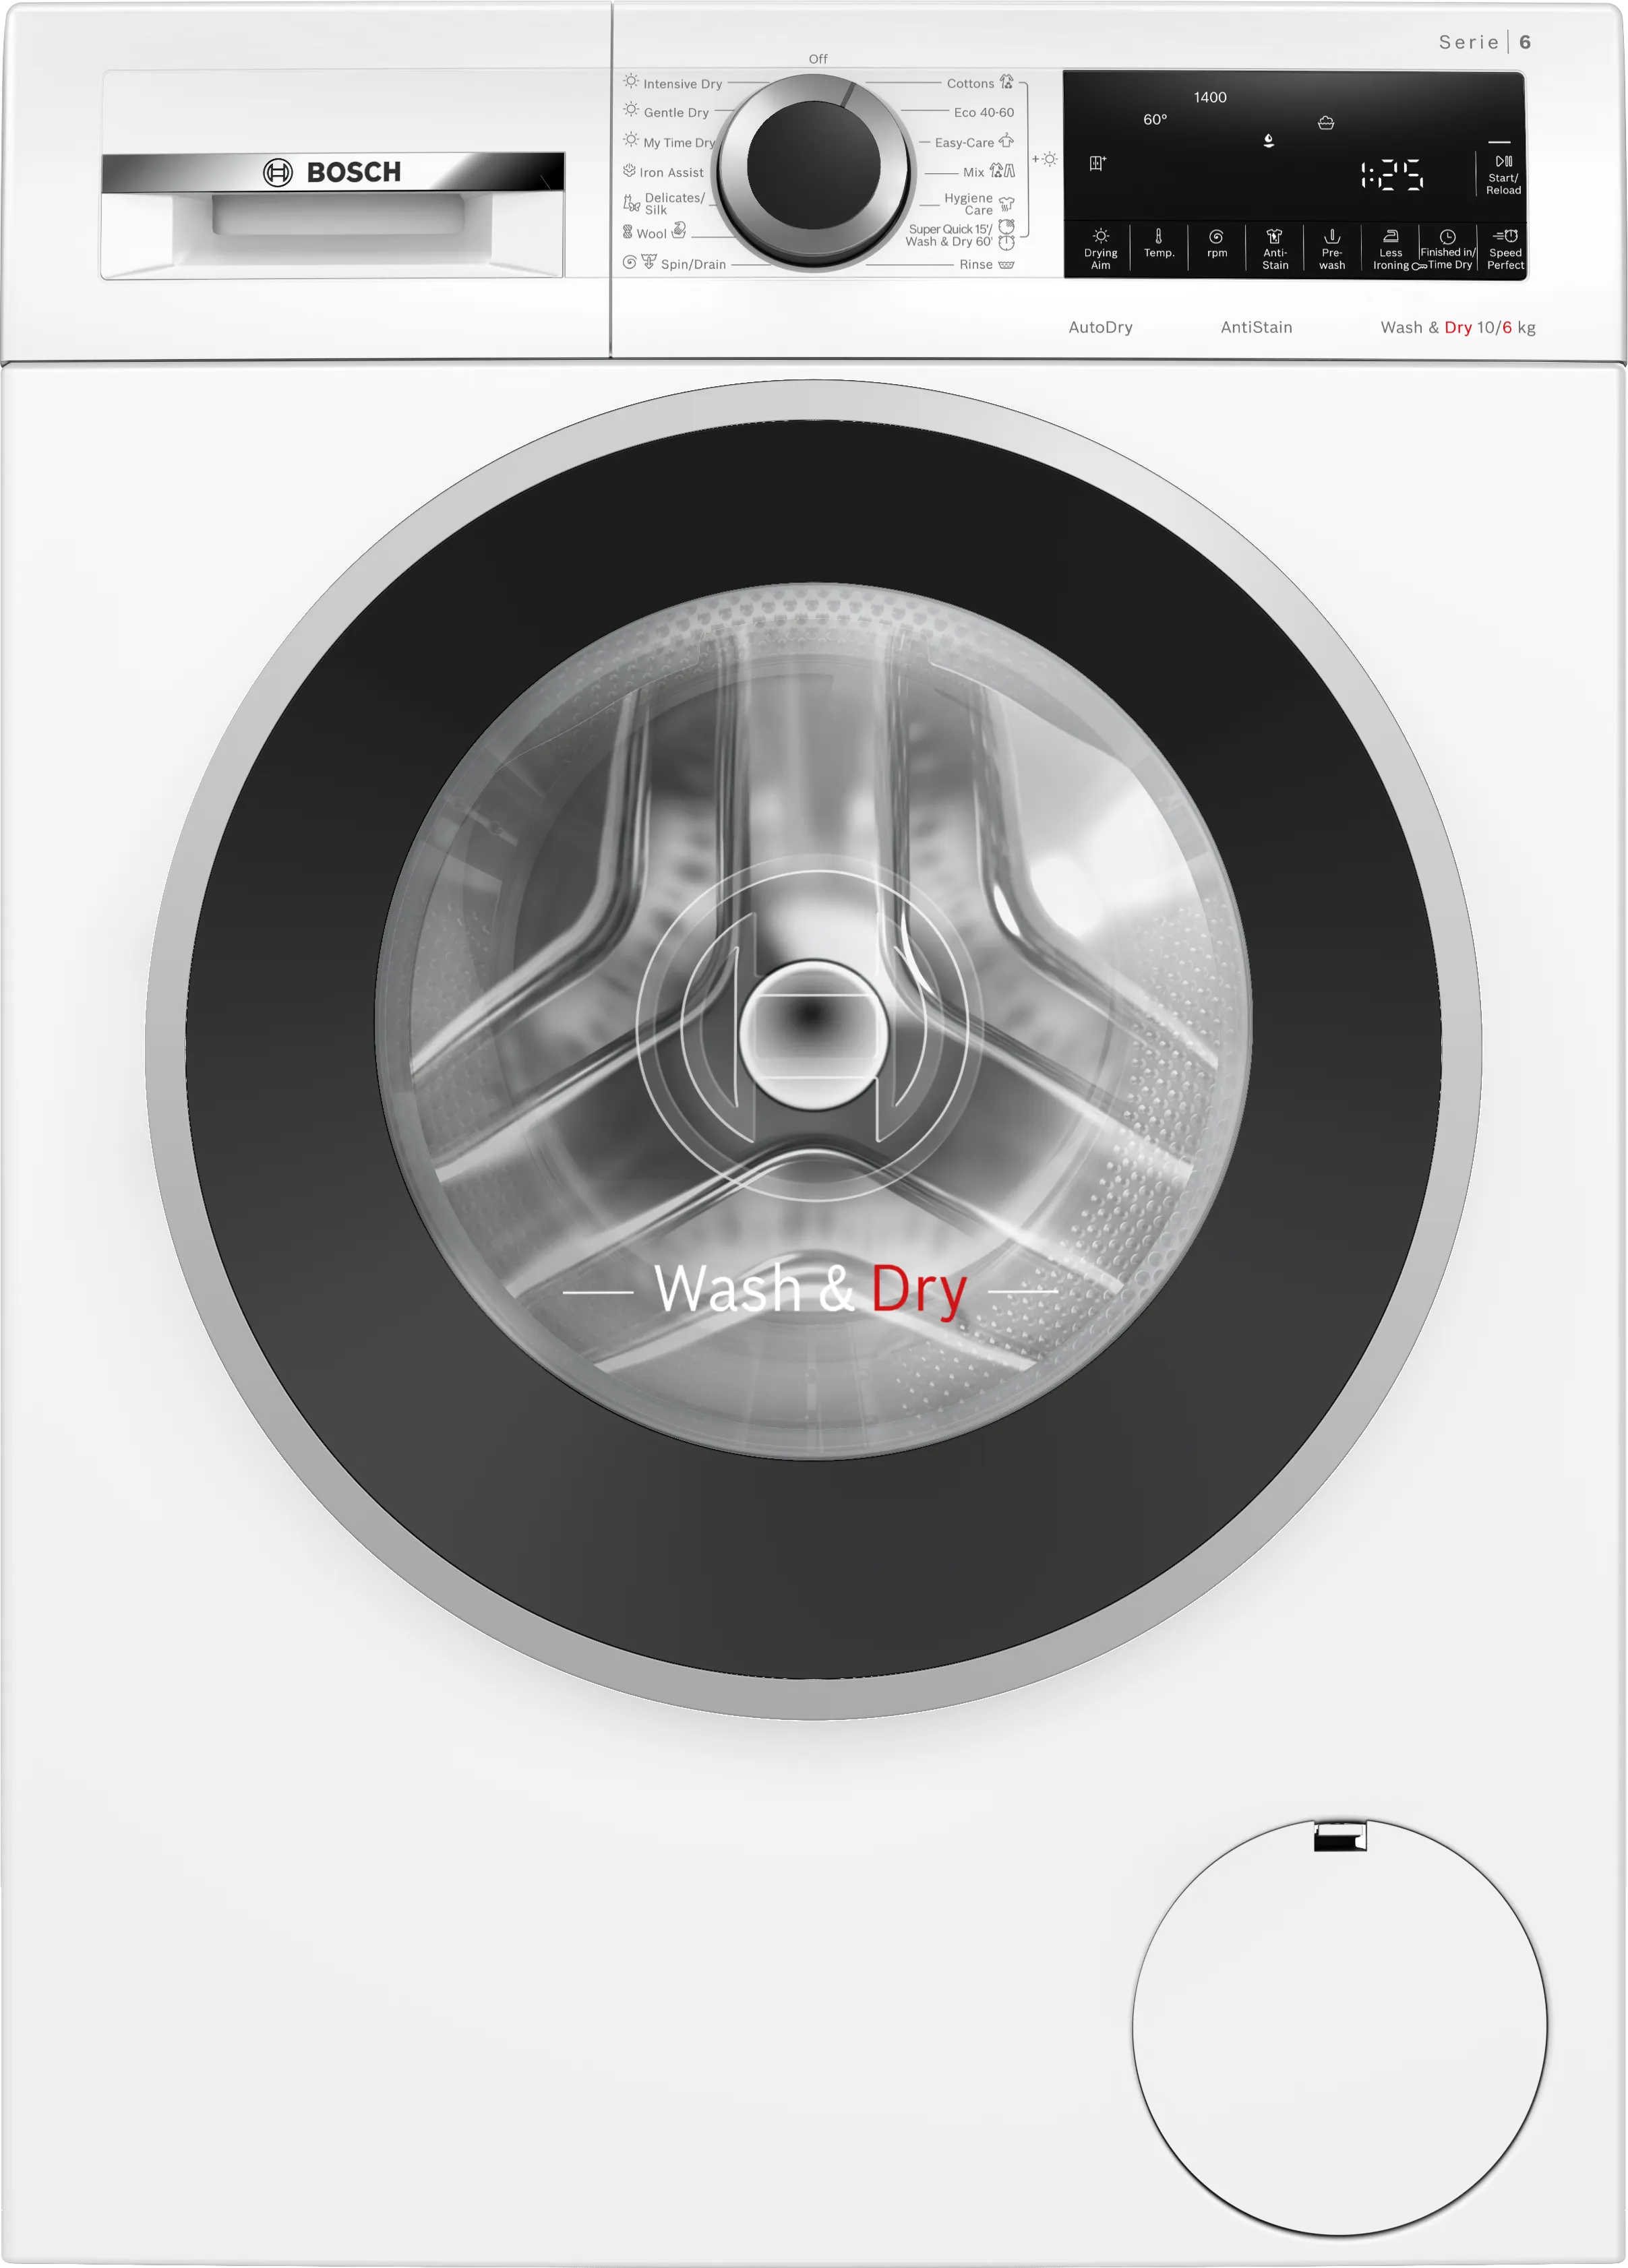 Series 6 washer-dryer 10/6 kg 1400 rpm 